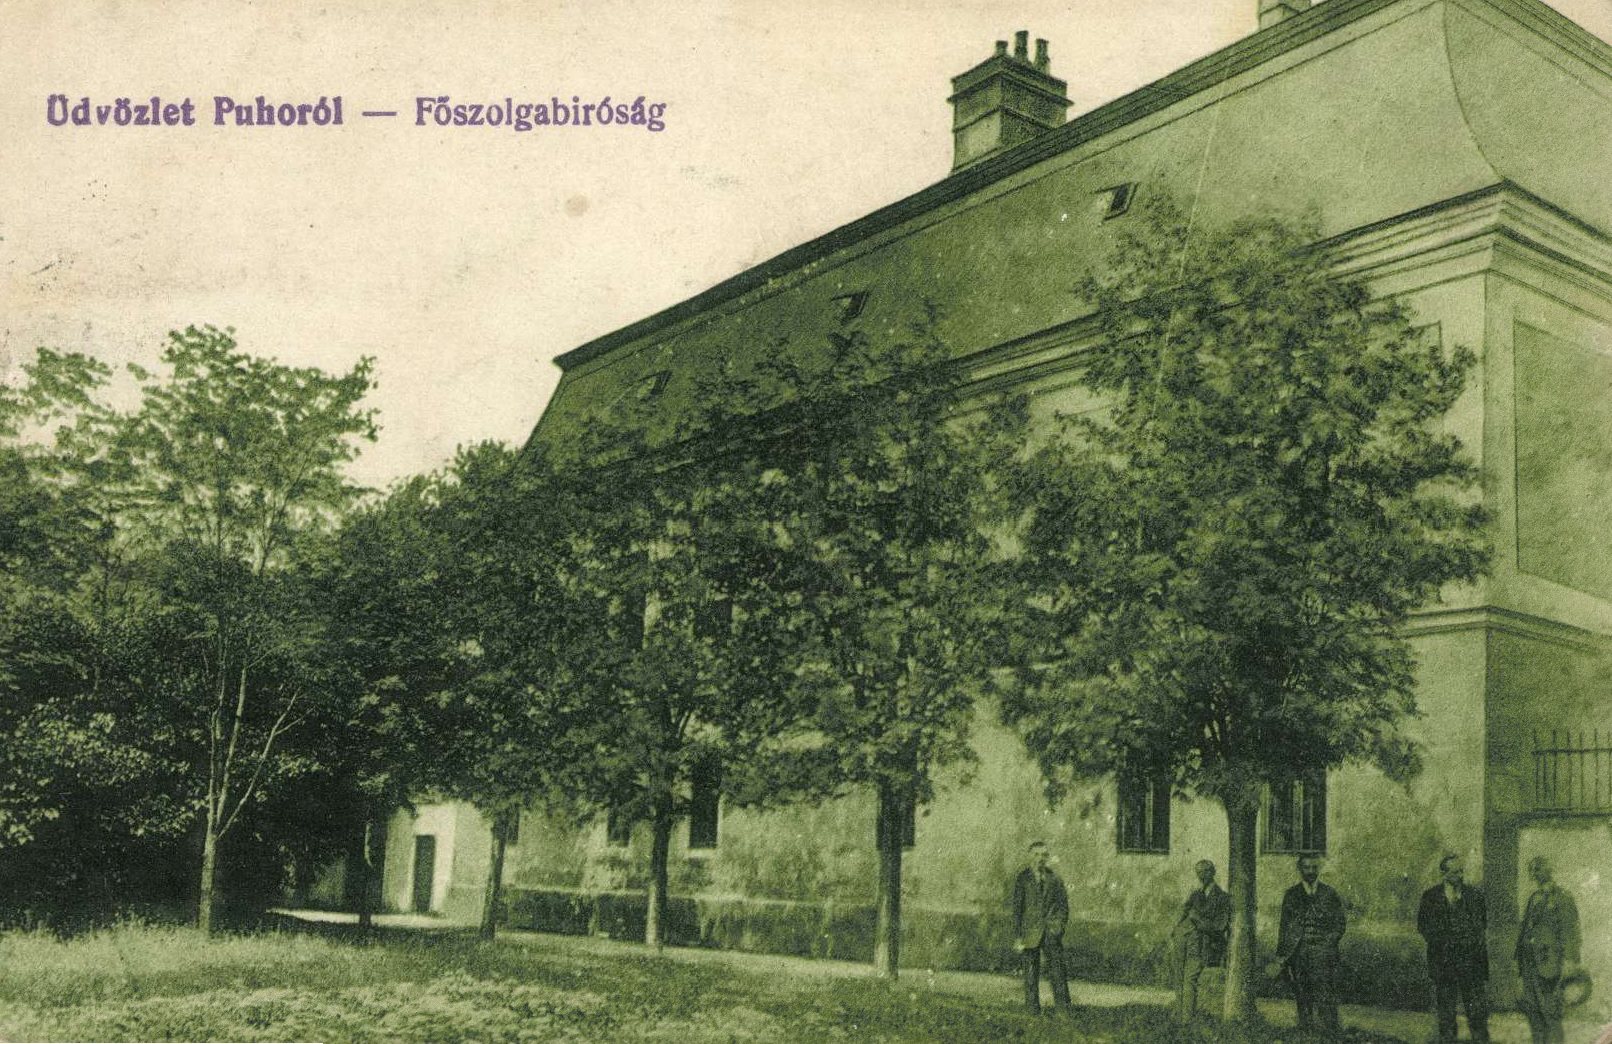 Na obrázku z prelomu 19. a 20. storočia je vidieť, že najstaršia budova v meste Púchov - Župný dom, slúžila ako tzv. Hlavný policajný súd